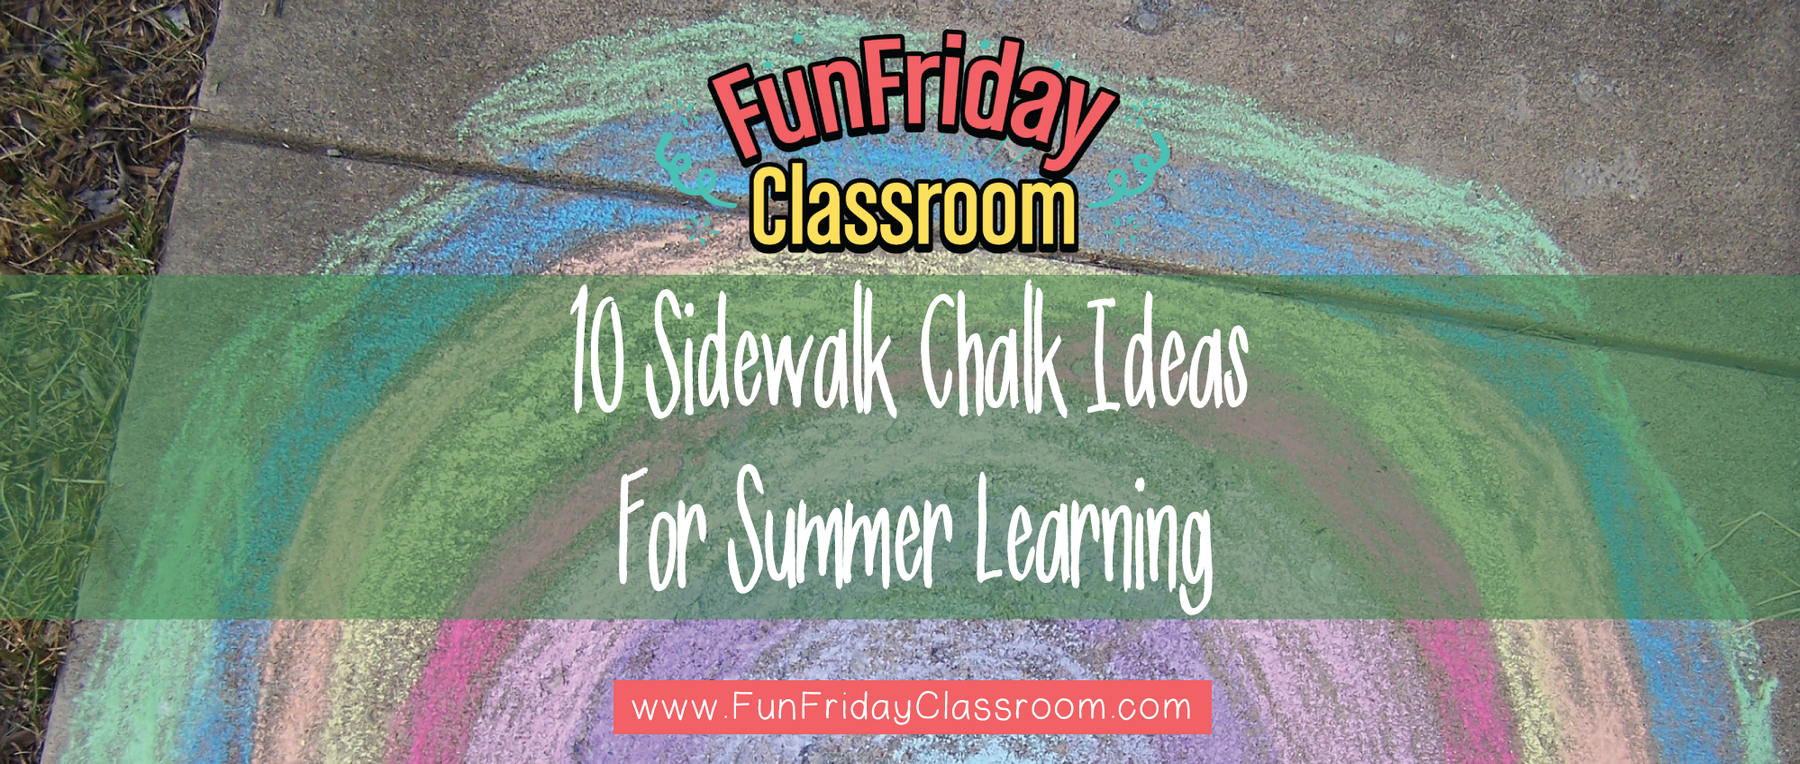 10 Sidewalk Chalk Ideas For Summer Learning